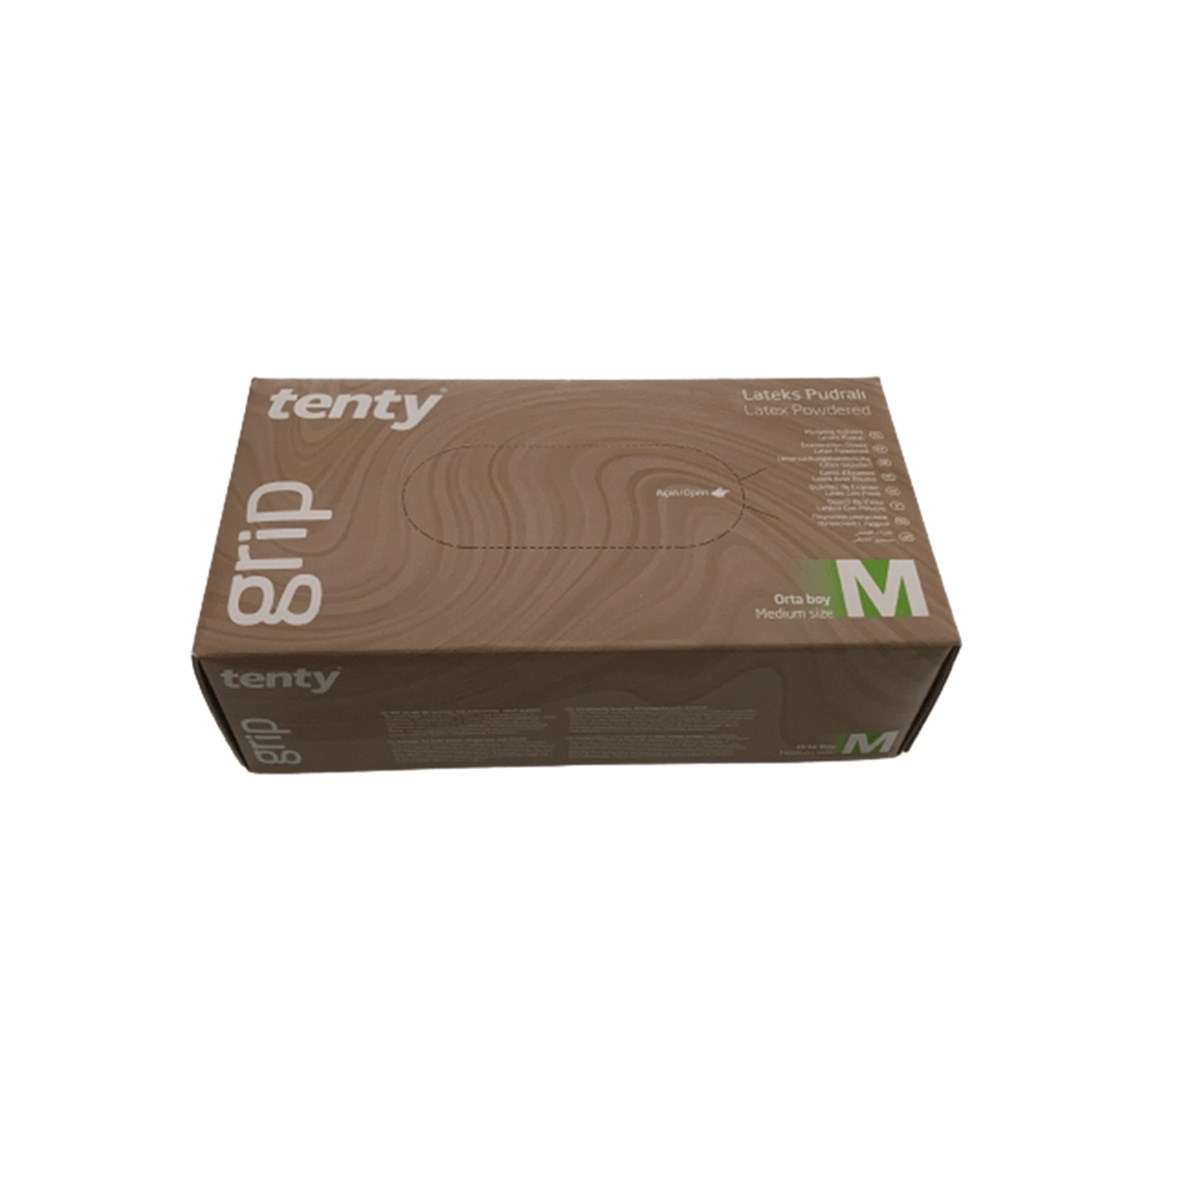 Tenty Grip Pudralı Muayene Eldiveni Medium 100 Adet Fiyatları |  Dermosiparis.com